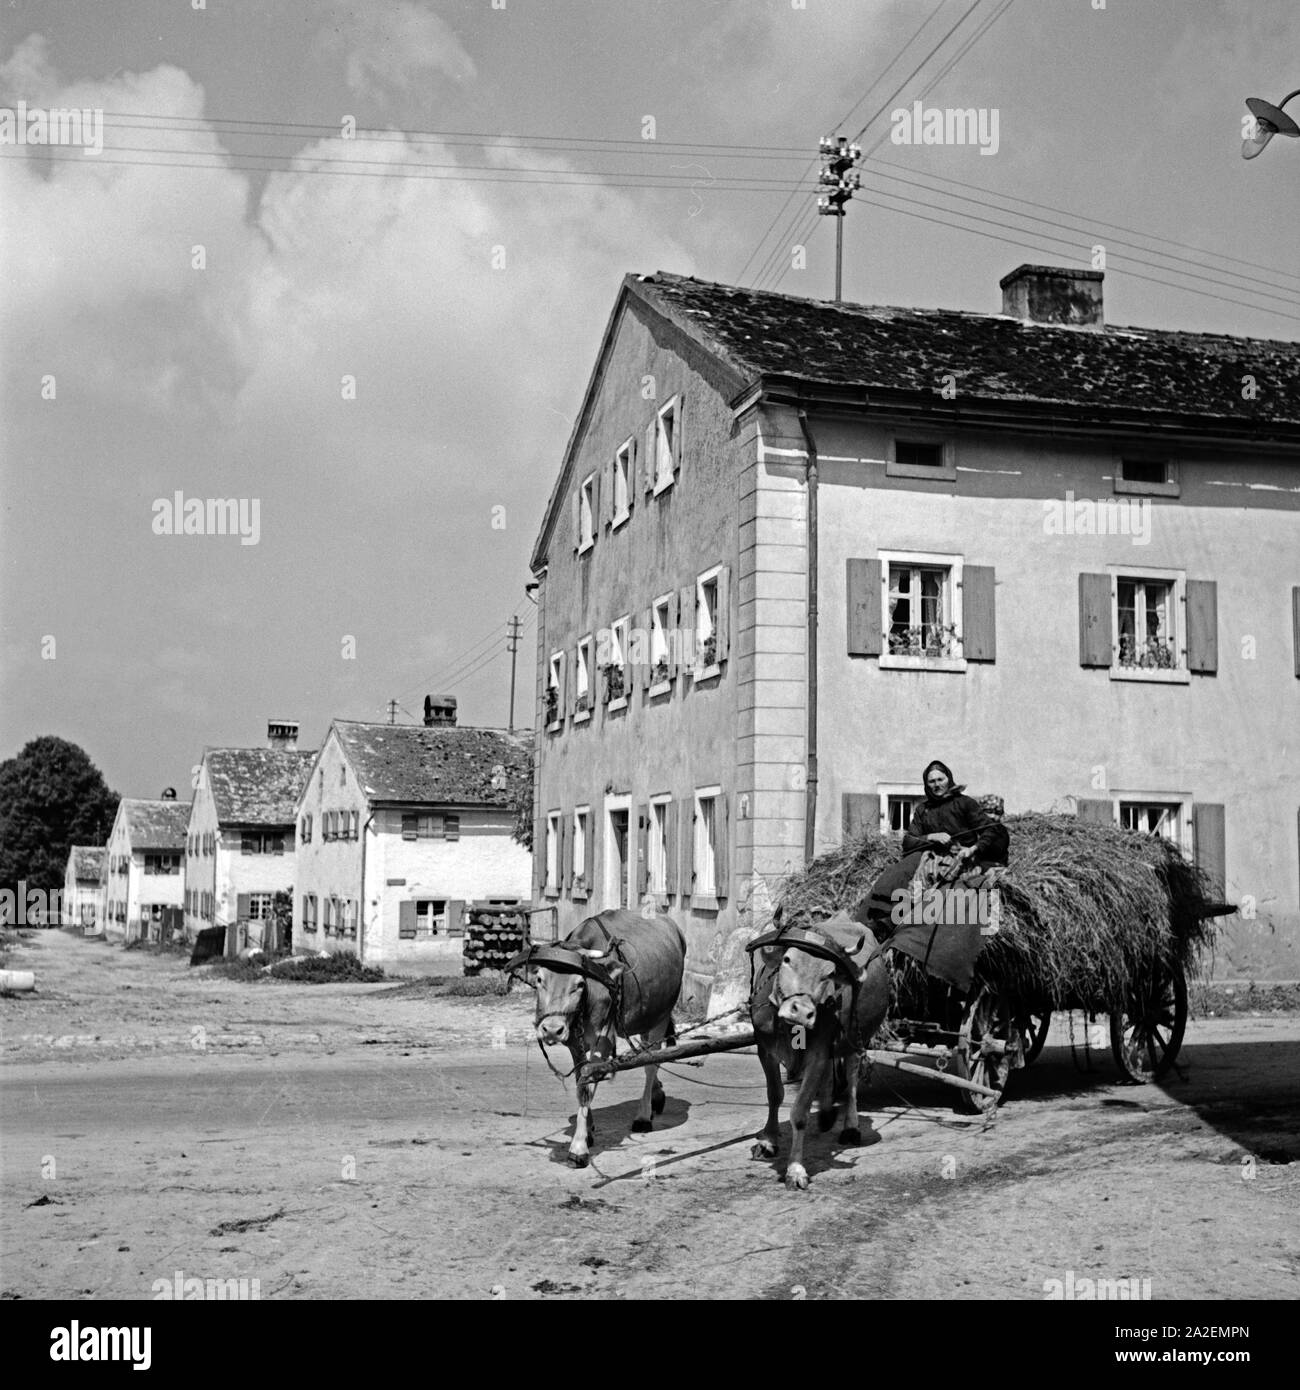 Eine Bäuerin fährt mit ihem Ochsengespann durch Weissenburg, Deutschland 1930er Jahre. A farm woman drives her oxen carriage through the streets of Weissenburg, Germany 1930s. Stock Photo